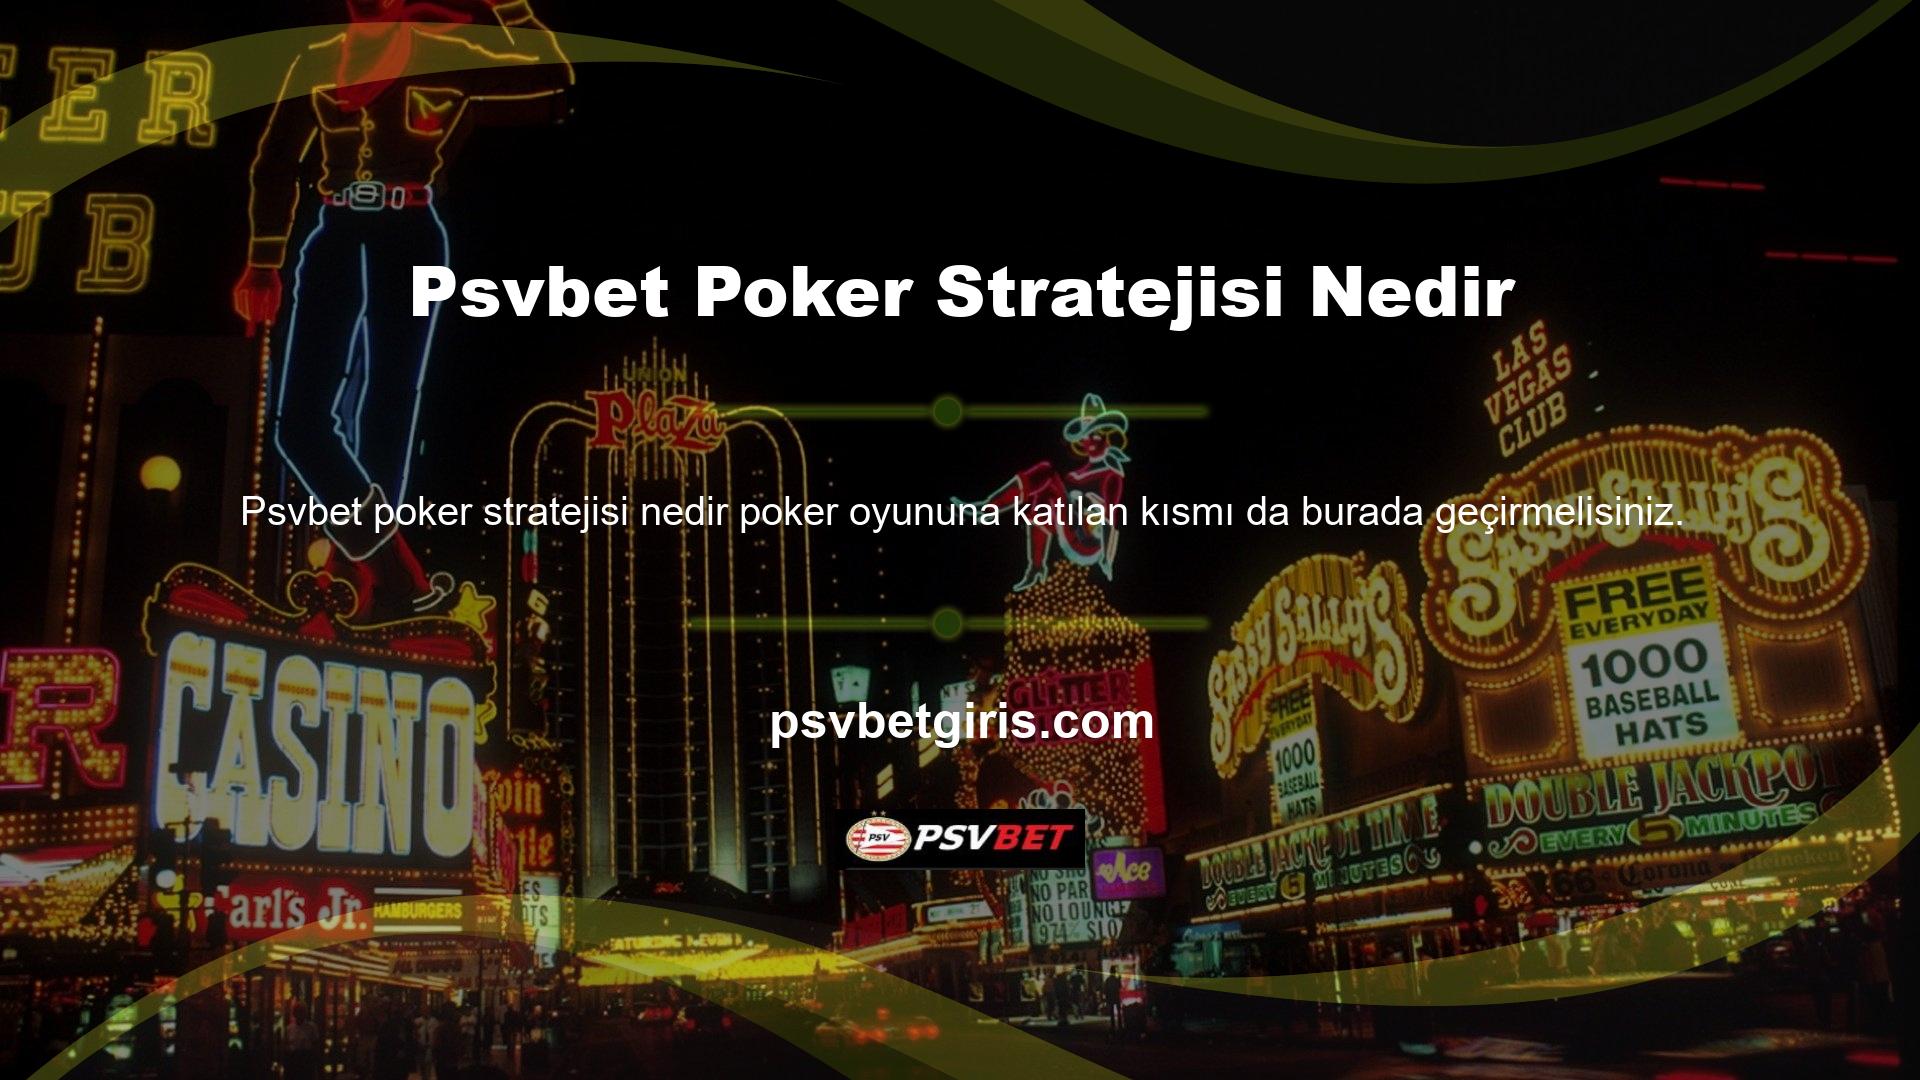 Bunun nedeni, modern casino sitelerinin Turkey Poker ve Texas Hold'em gibi daha popüler seçeneklere sahip olmasıdır